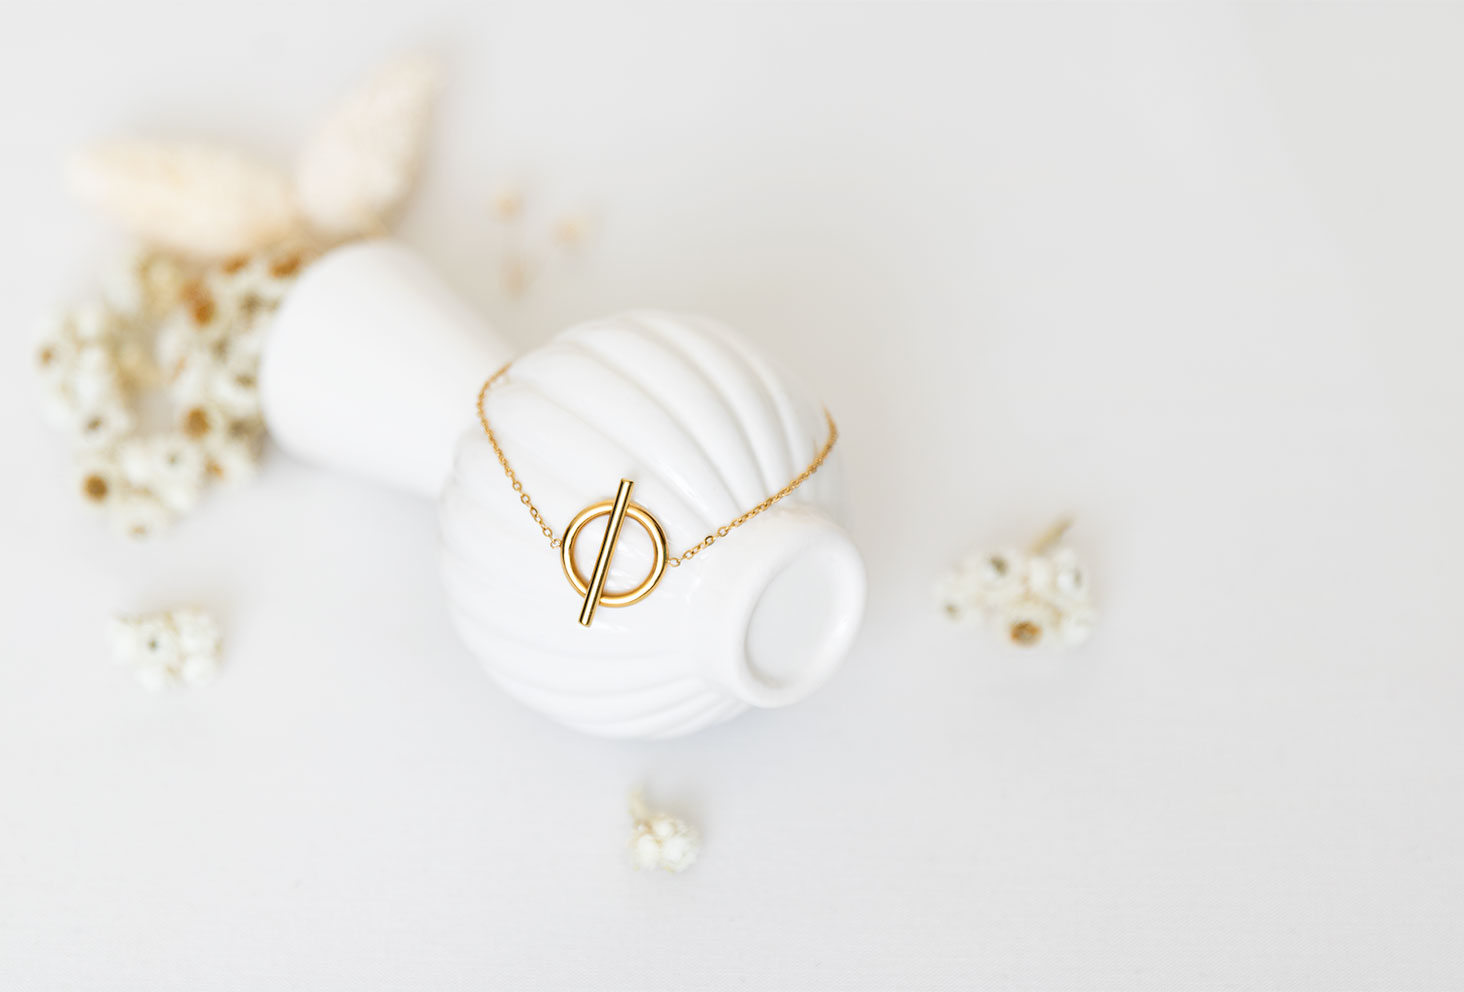 Le bracelet doré Vaniya Bijoux sur fond blanc, posé sur un vase renversé blanc au milieu de fleurs séchées